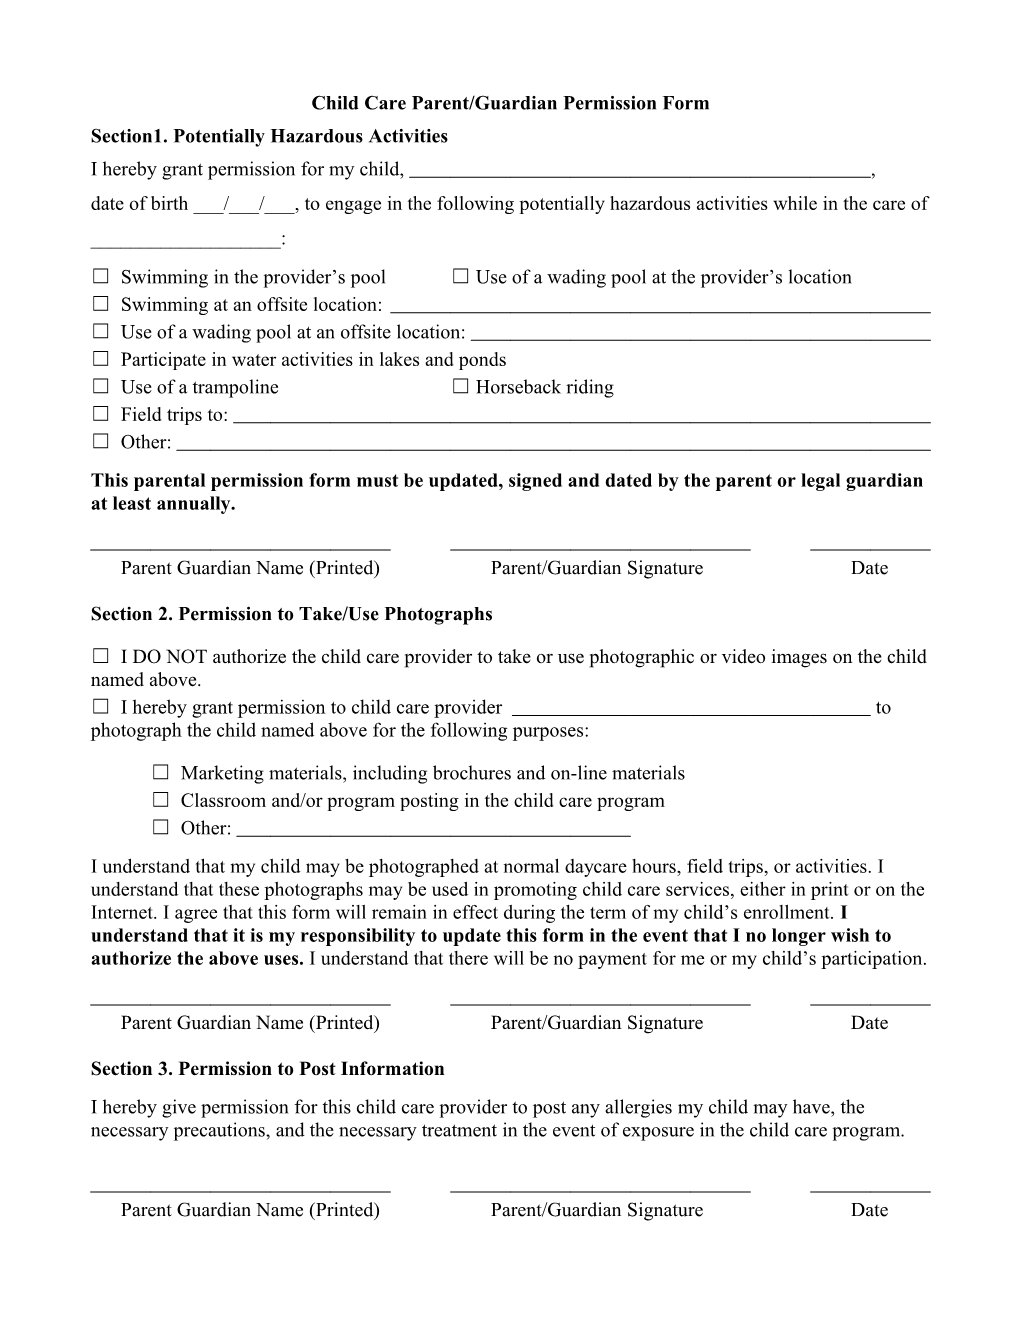 Child Care Parent/Guardian Permission Form